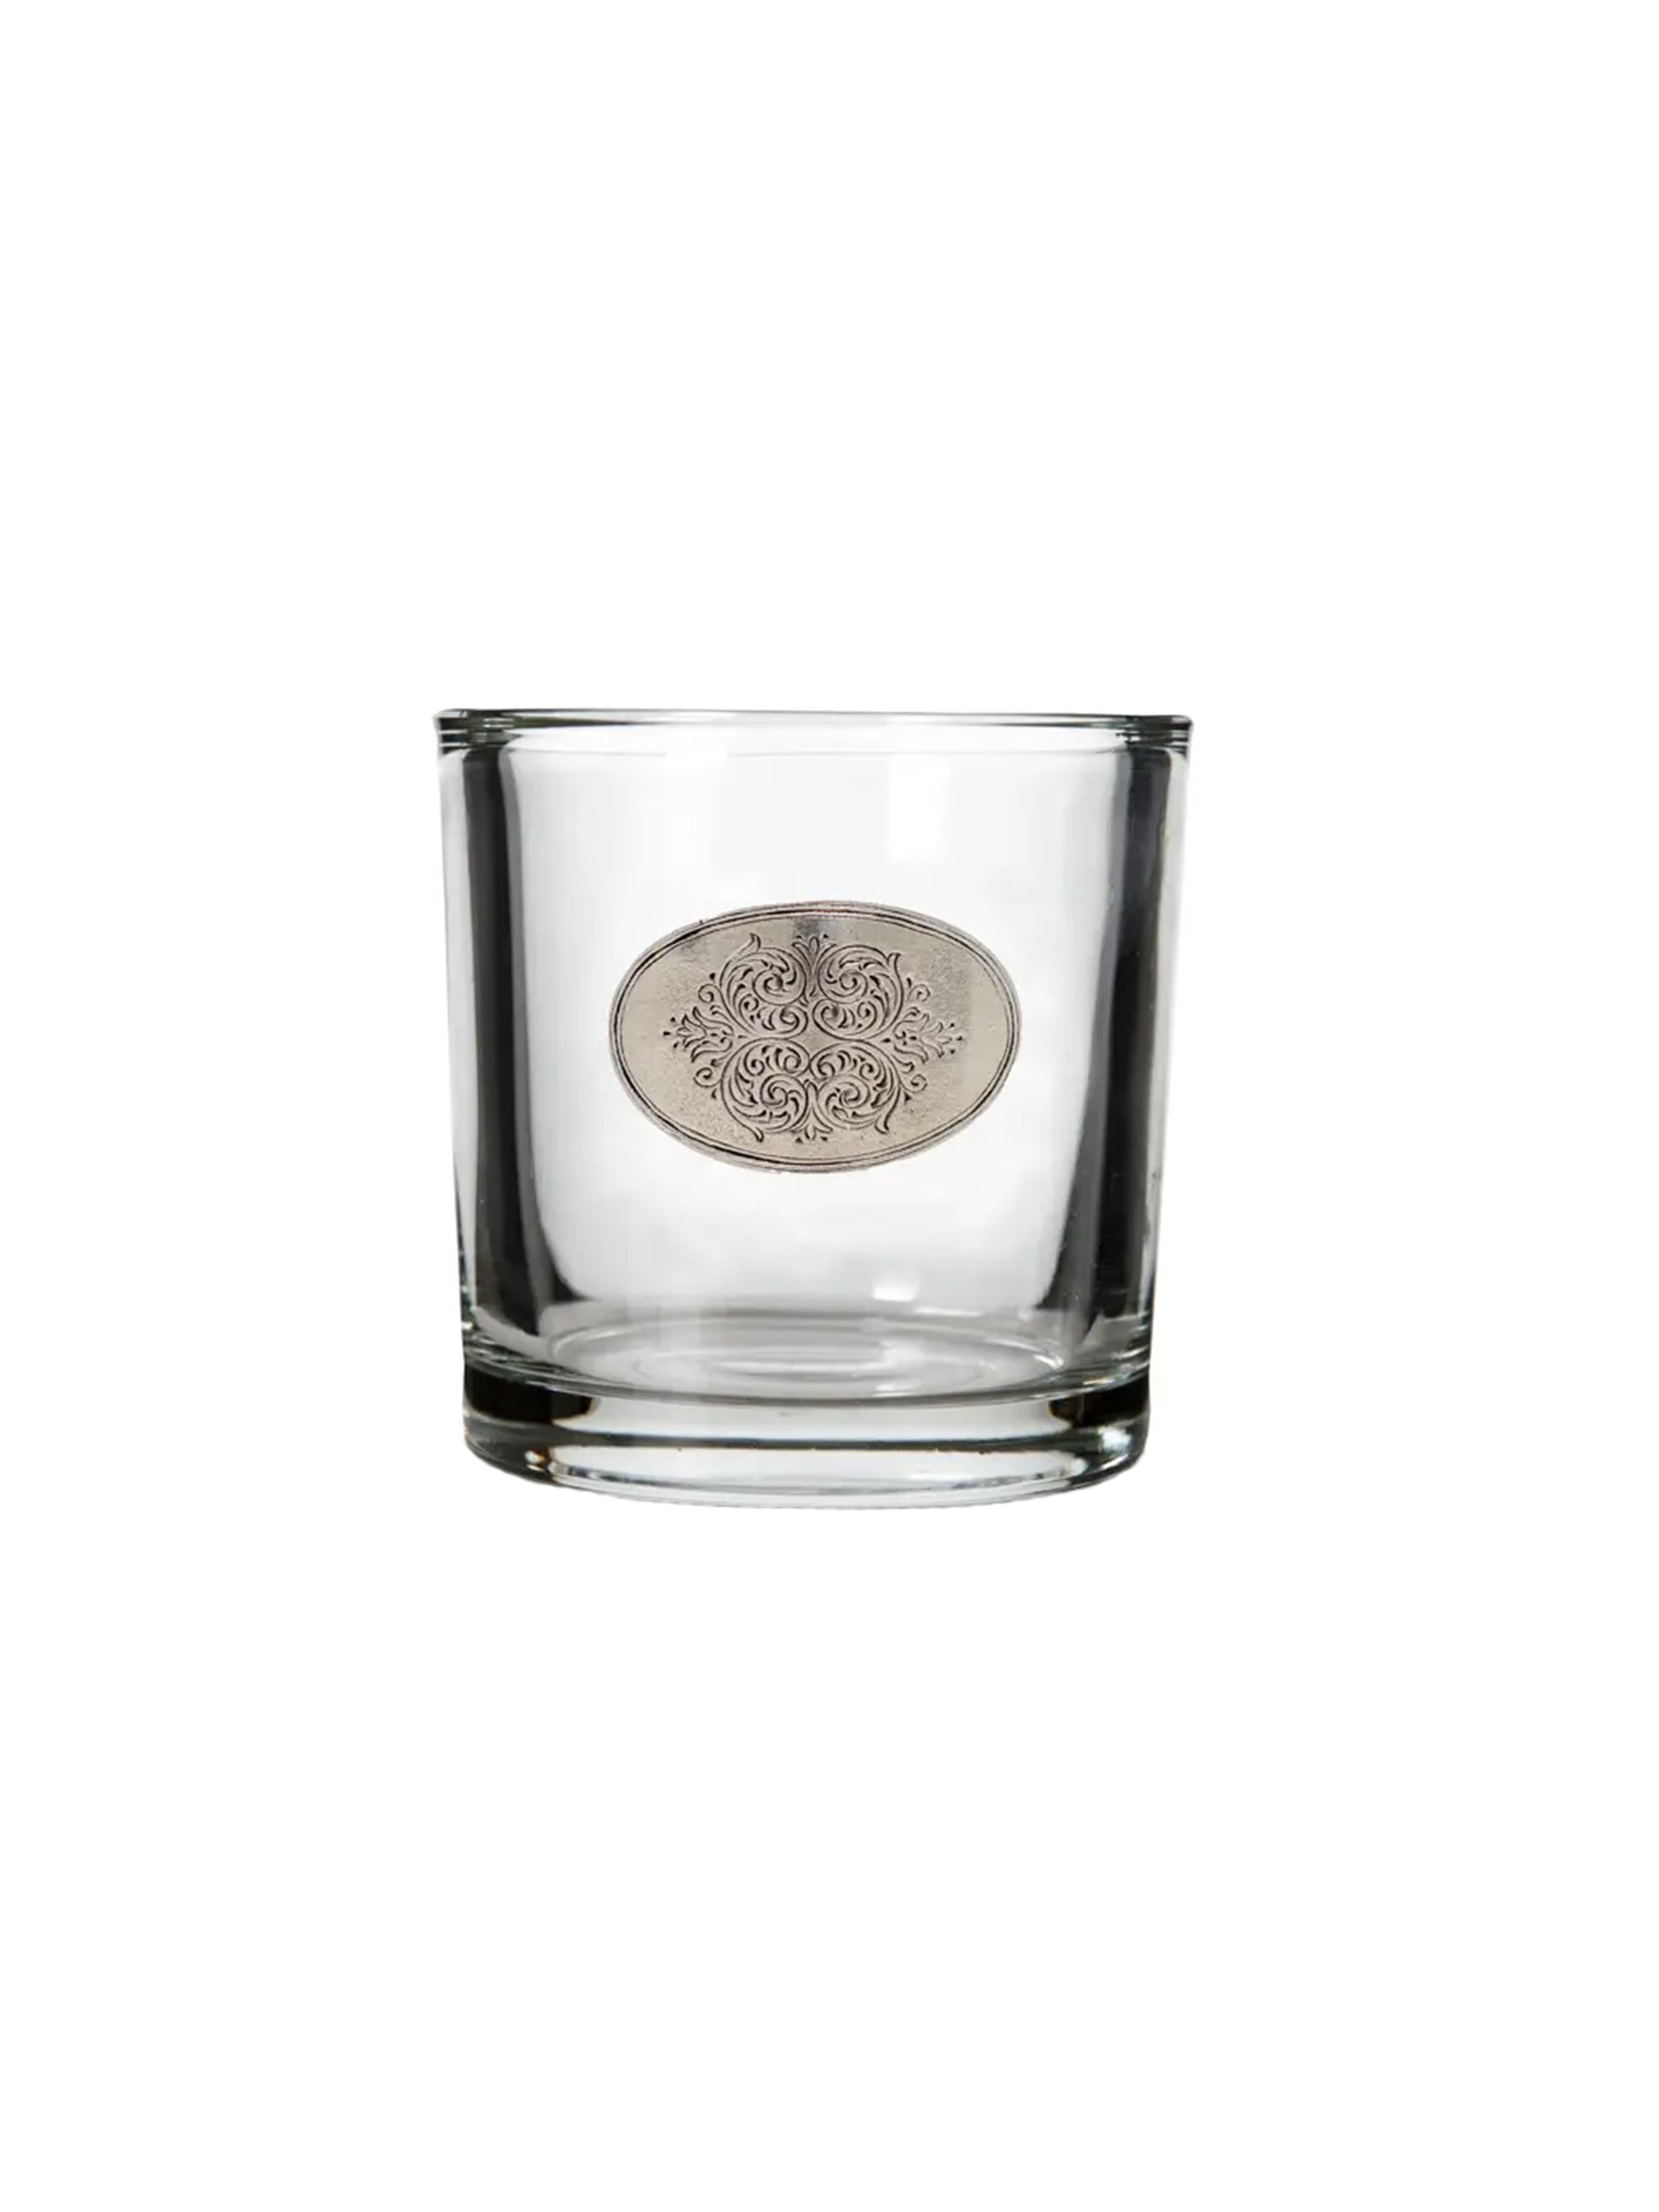 Arte Italica Damasco Glass Vessel Small Weston Table